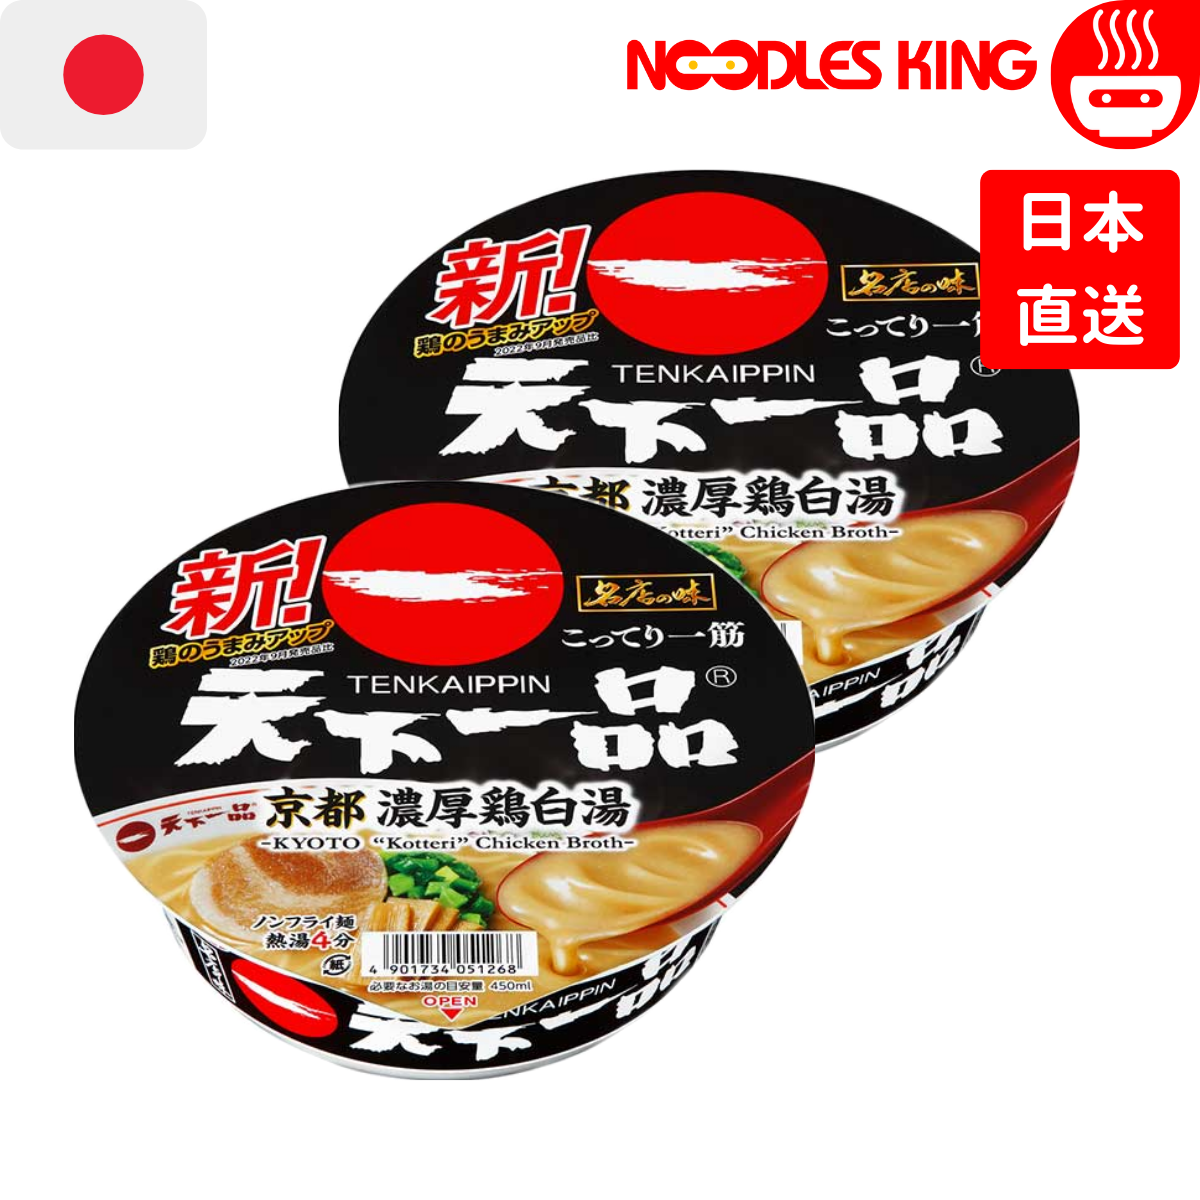 日本名店天下一品拉麵 - 京都濃厚雞白湯風味 135g x 2